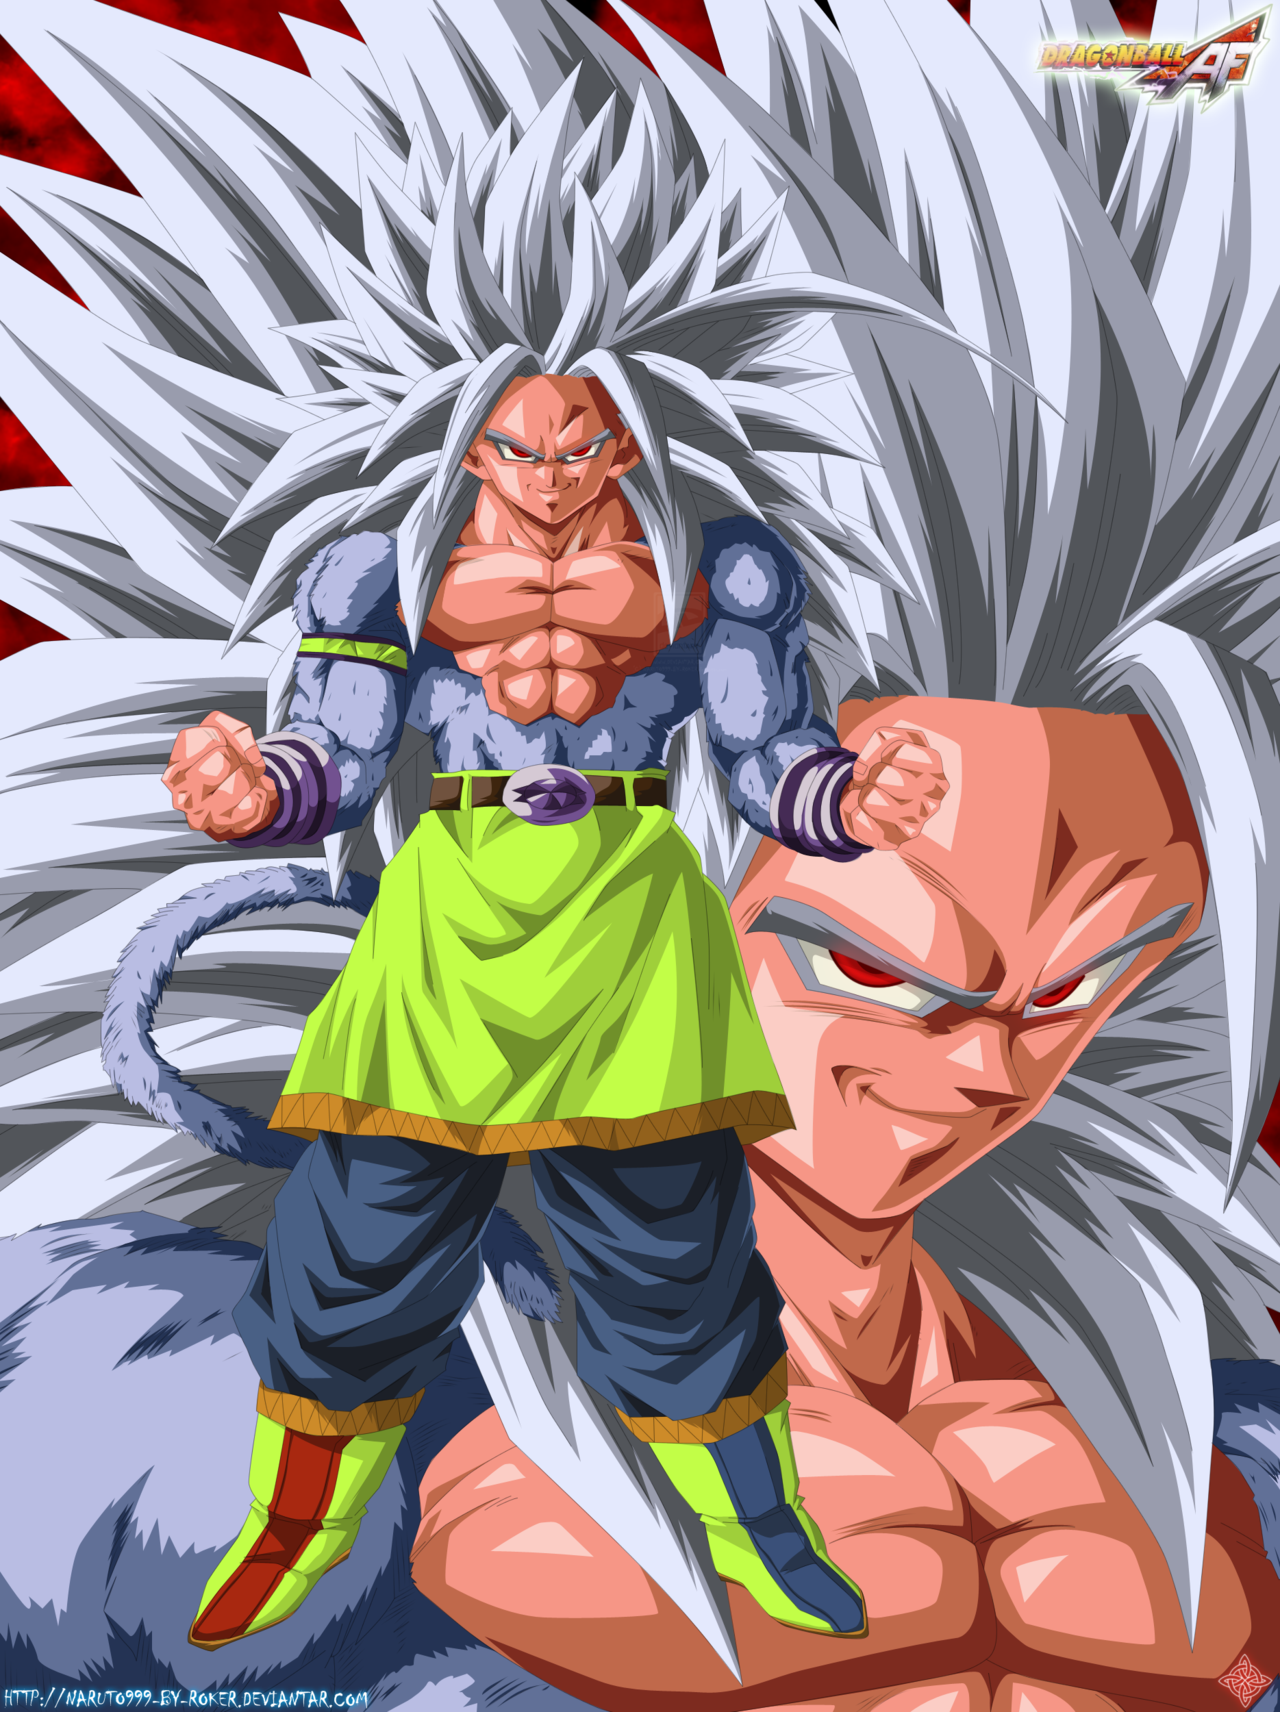 SSJ5 Goku & Vegeta VS SSGSS Goku & Vegeta